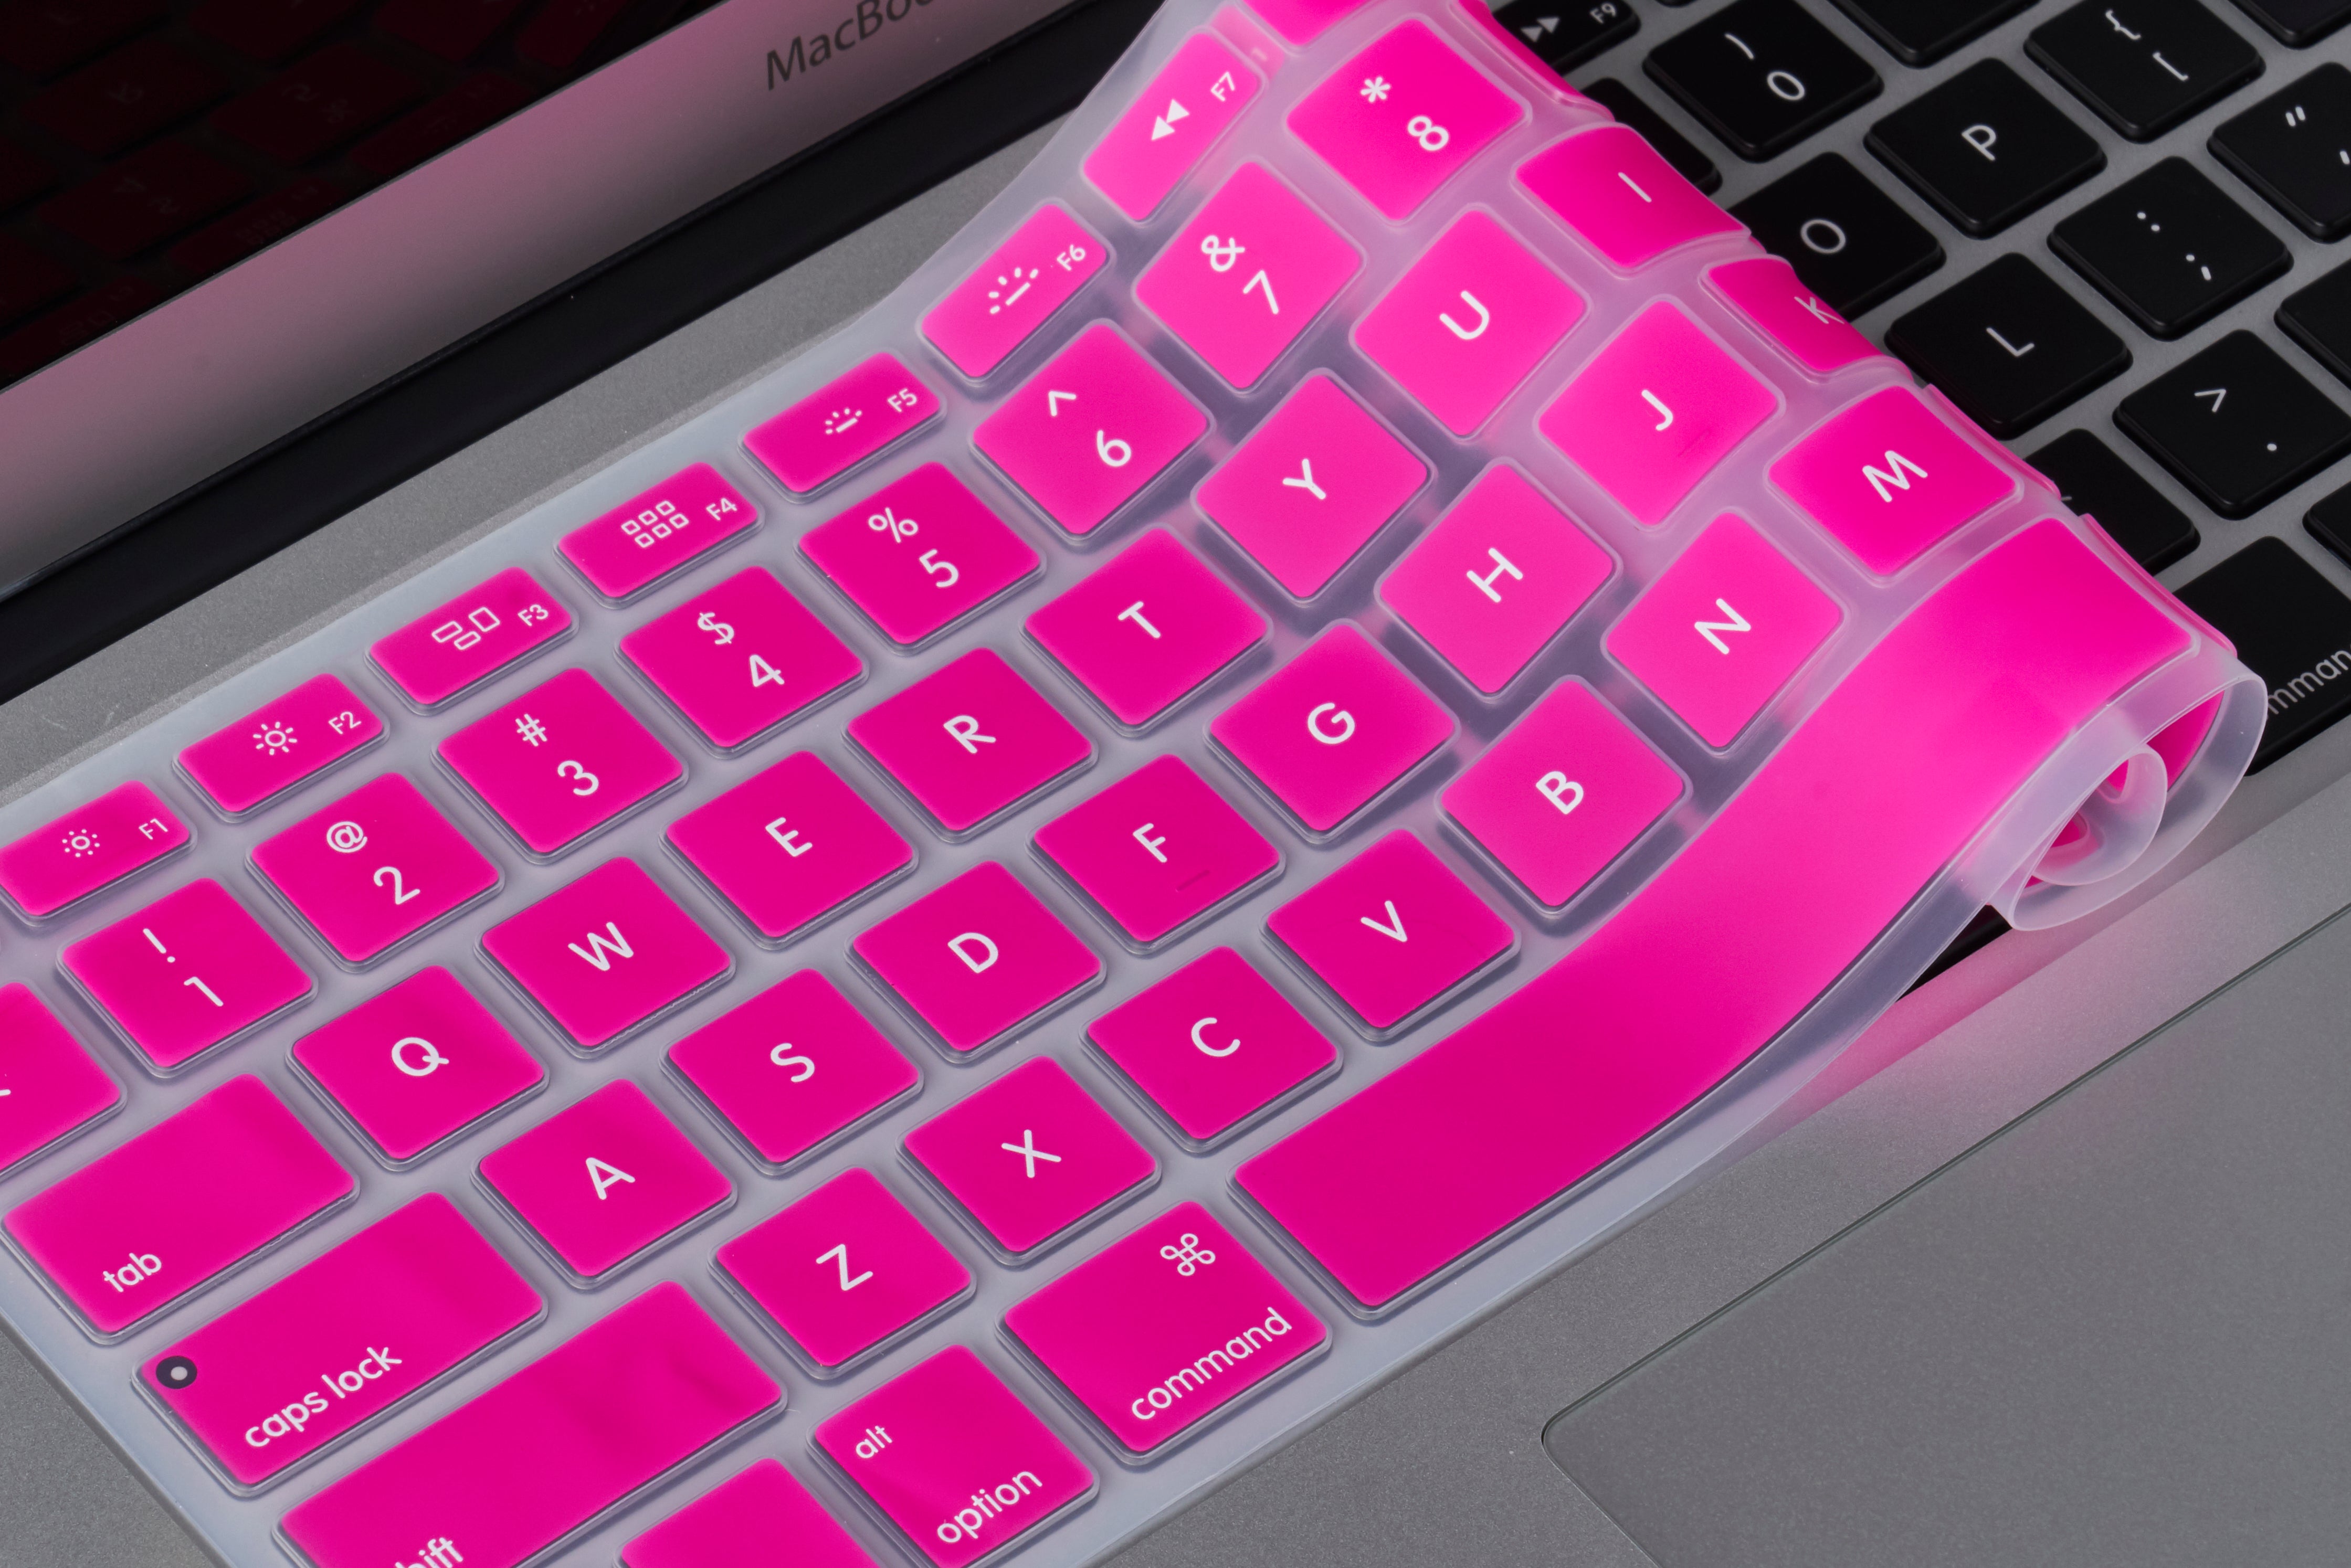 new peek keyboard covers